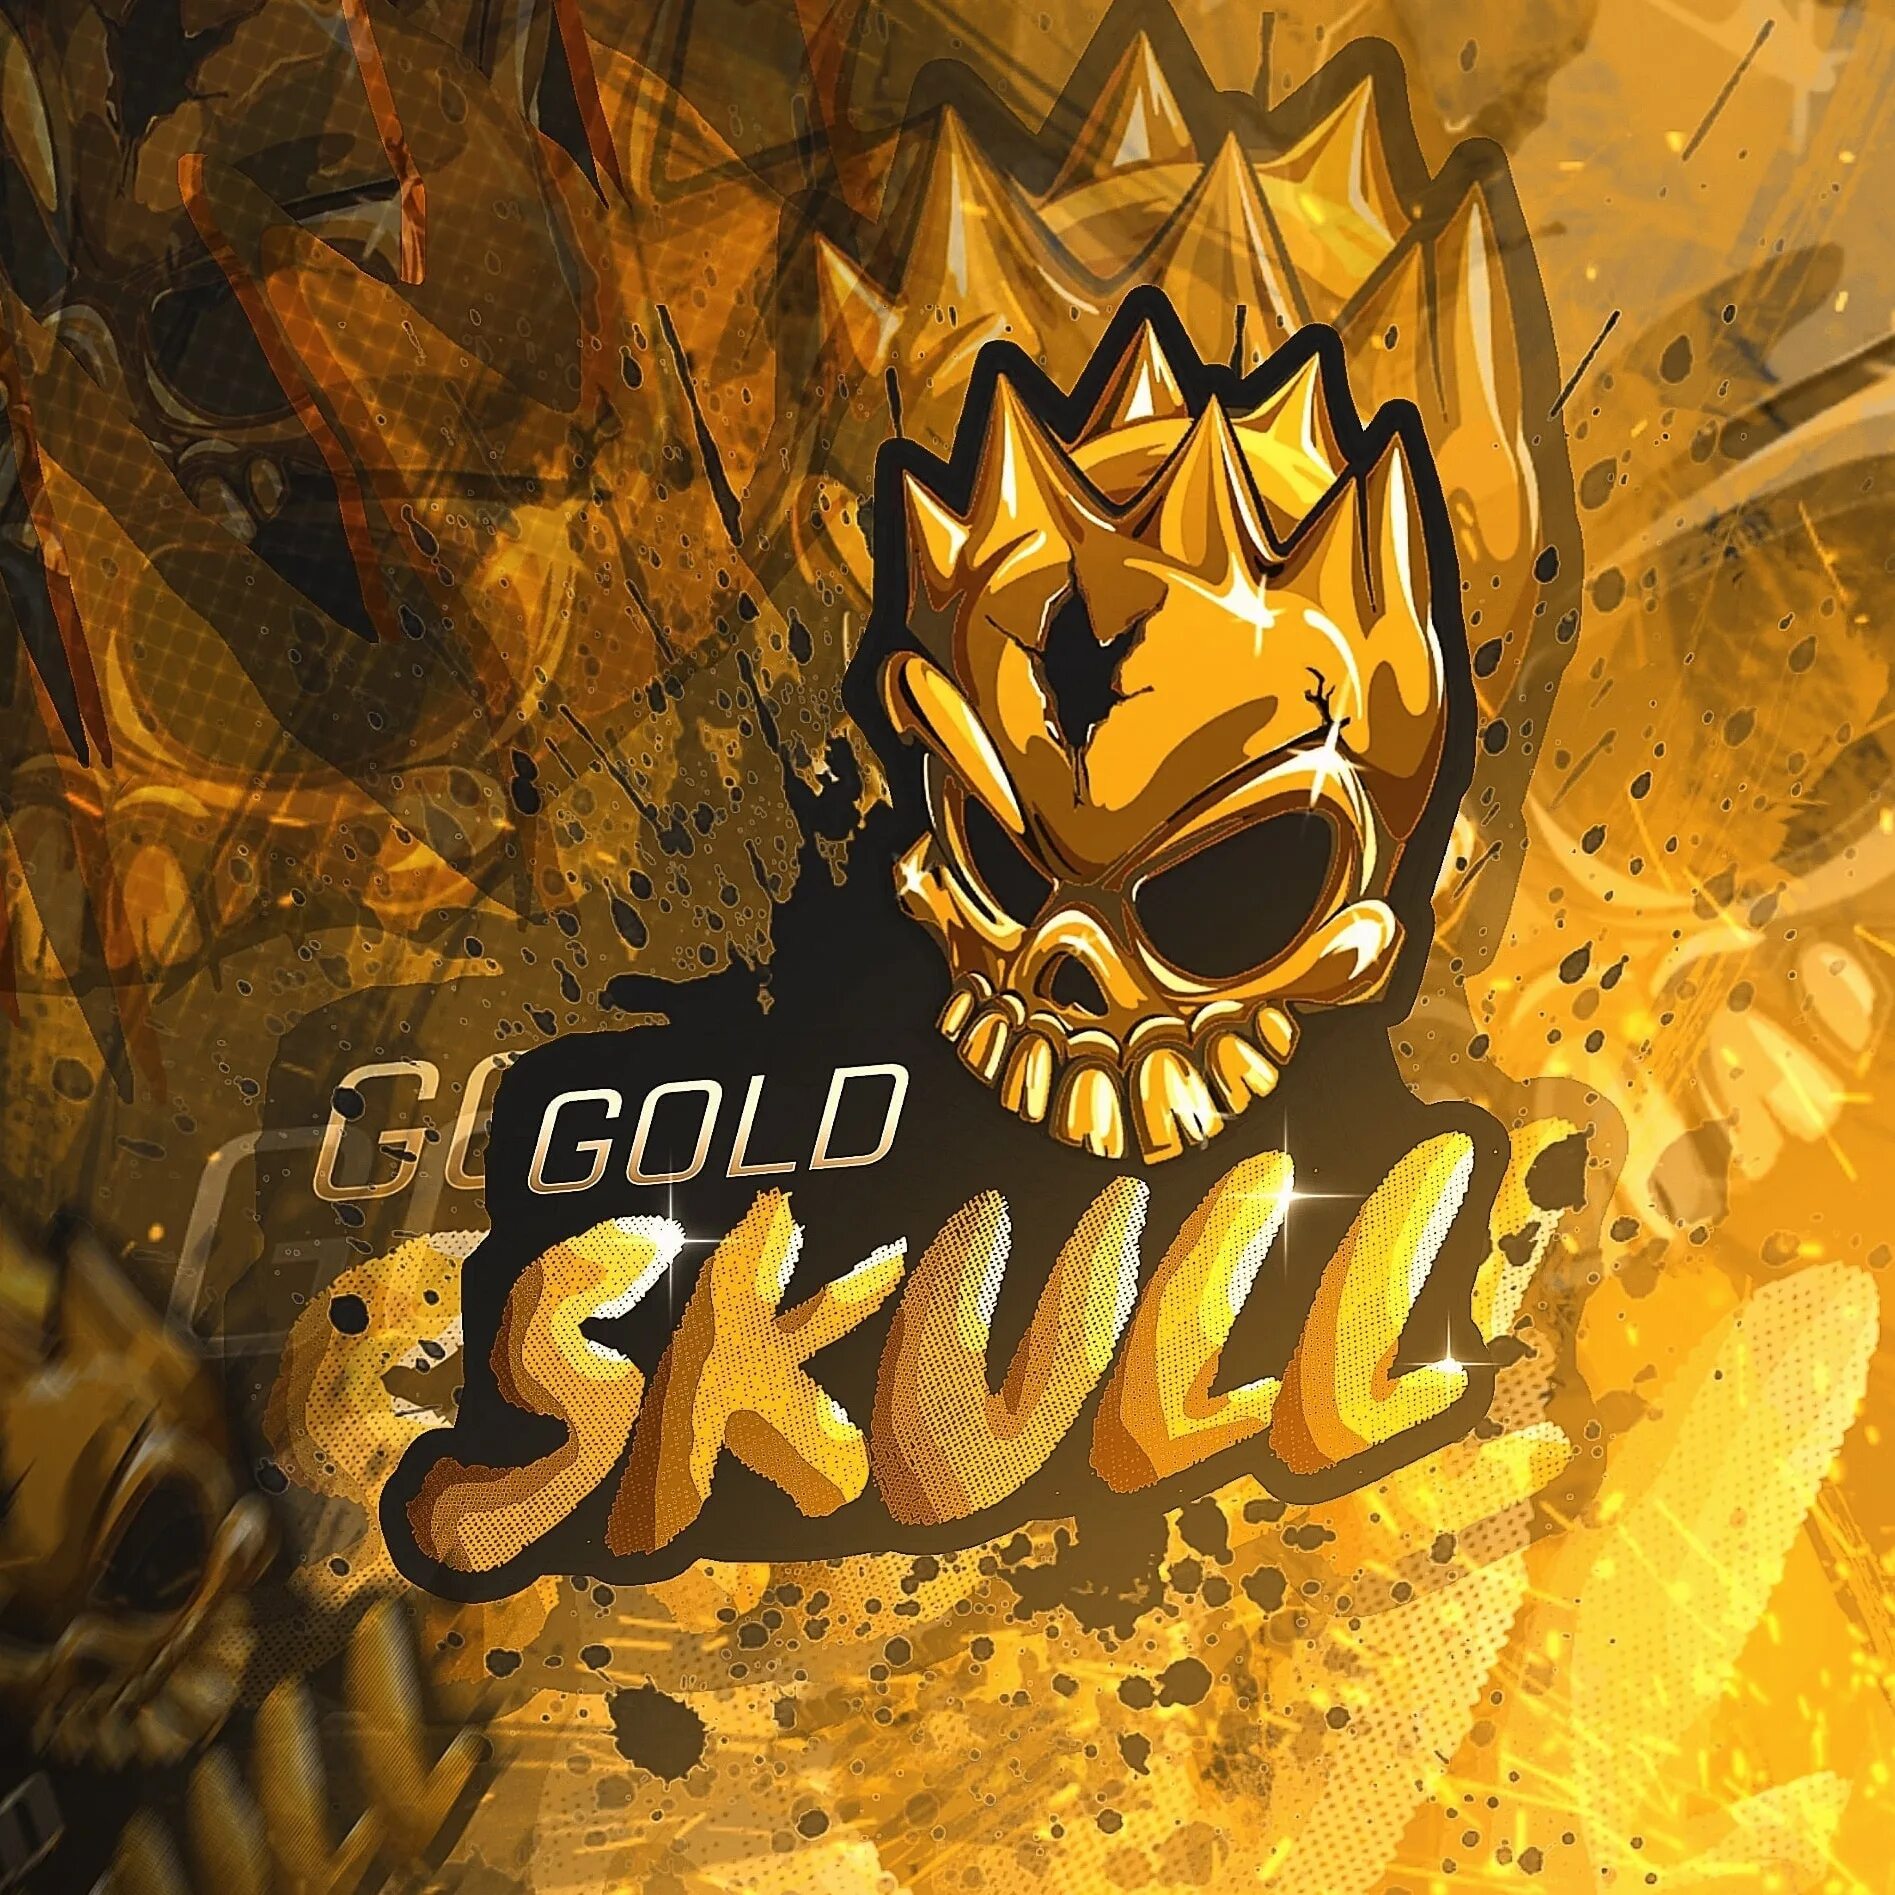 Наклейка gold. Наклейка Gold Skull. Gold Skull стандофф 2. Gold Skull Standoff 2 наклейка. Золотые наклейки стандофф 2.